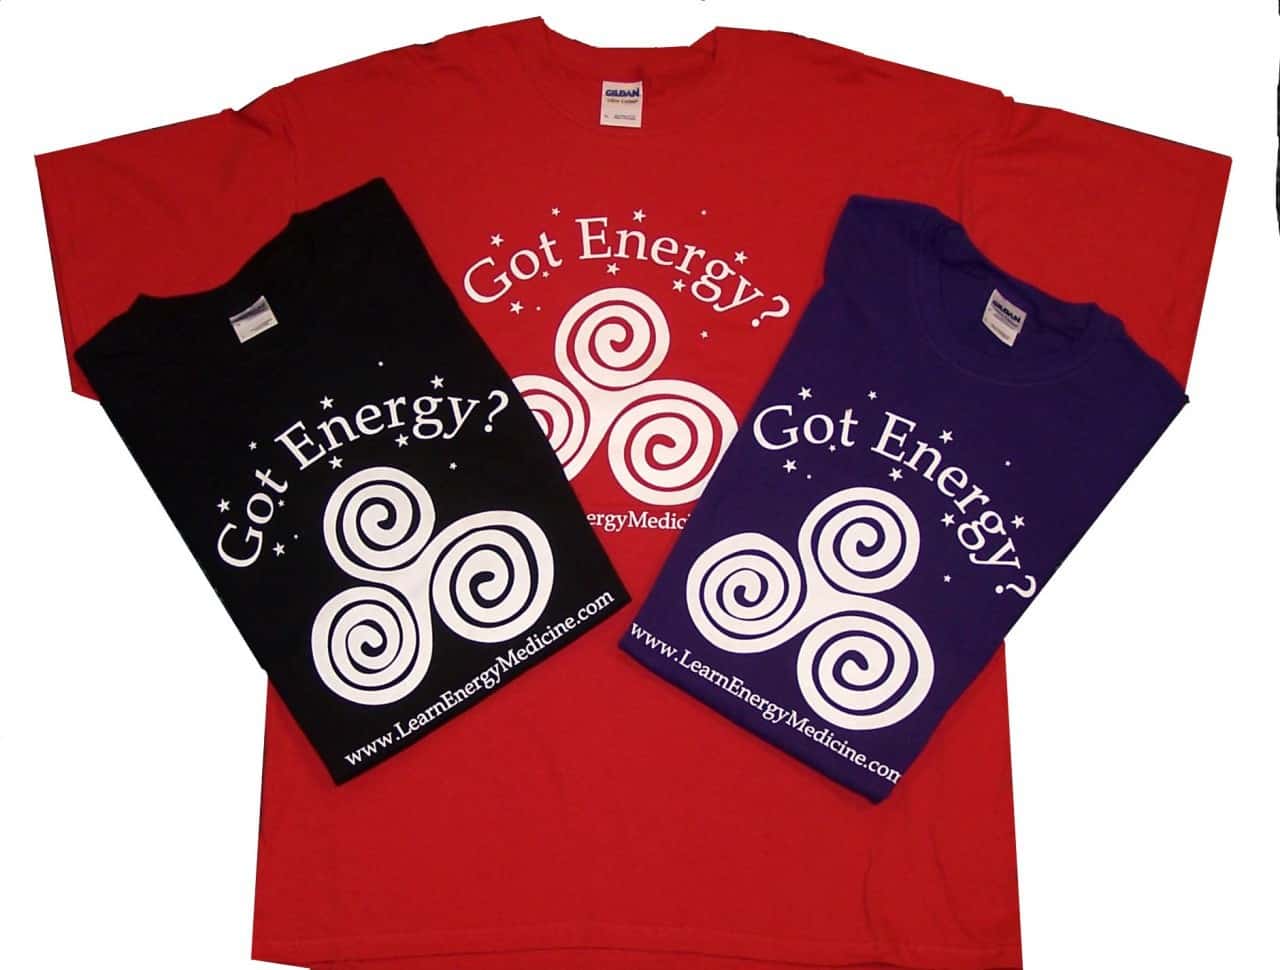 The Original "Got Energy?" T-Shirt